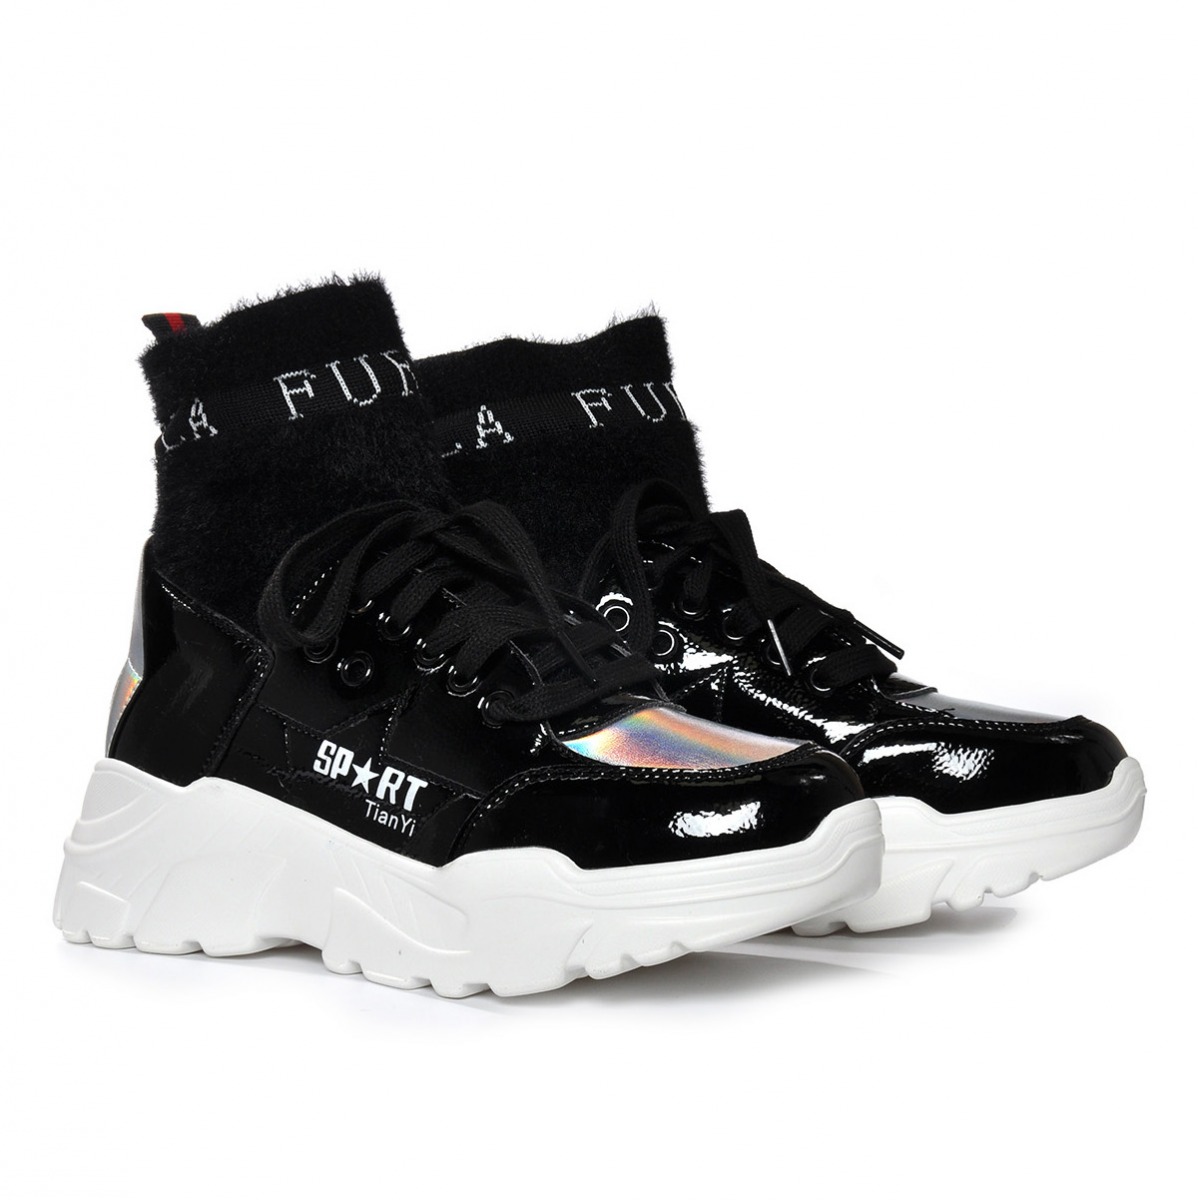 Flo Kadın Siyah Spor Sneaker Ayakkabı VZN19-084K. 5